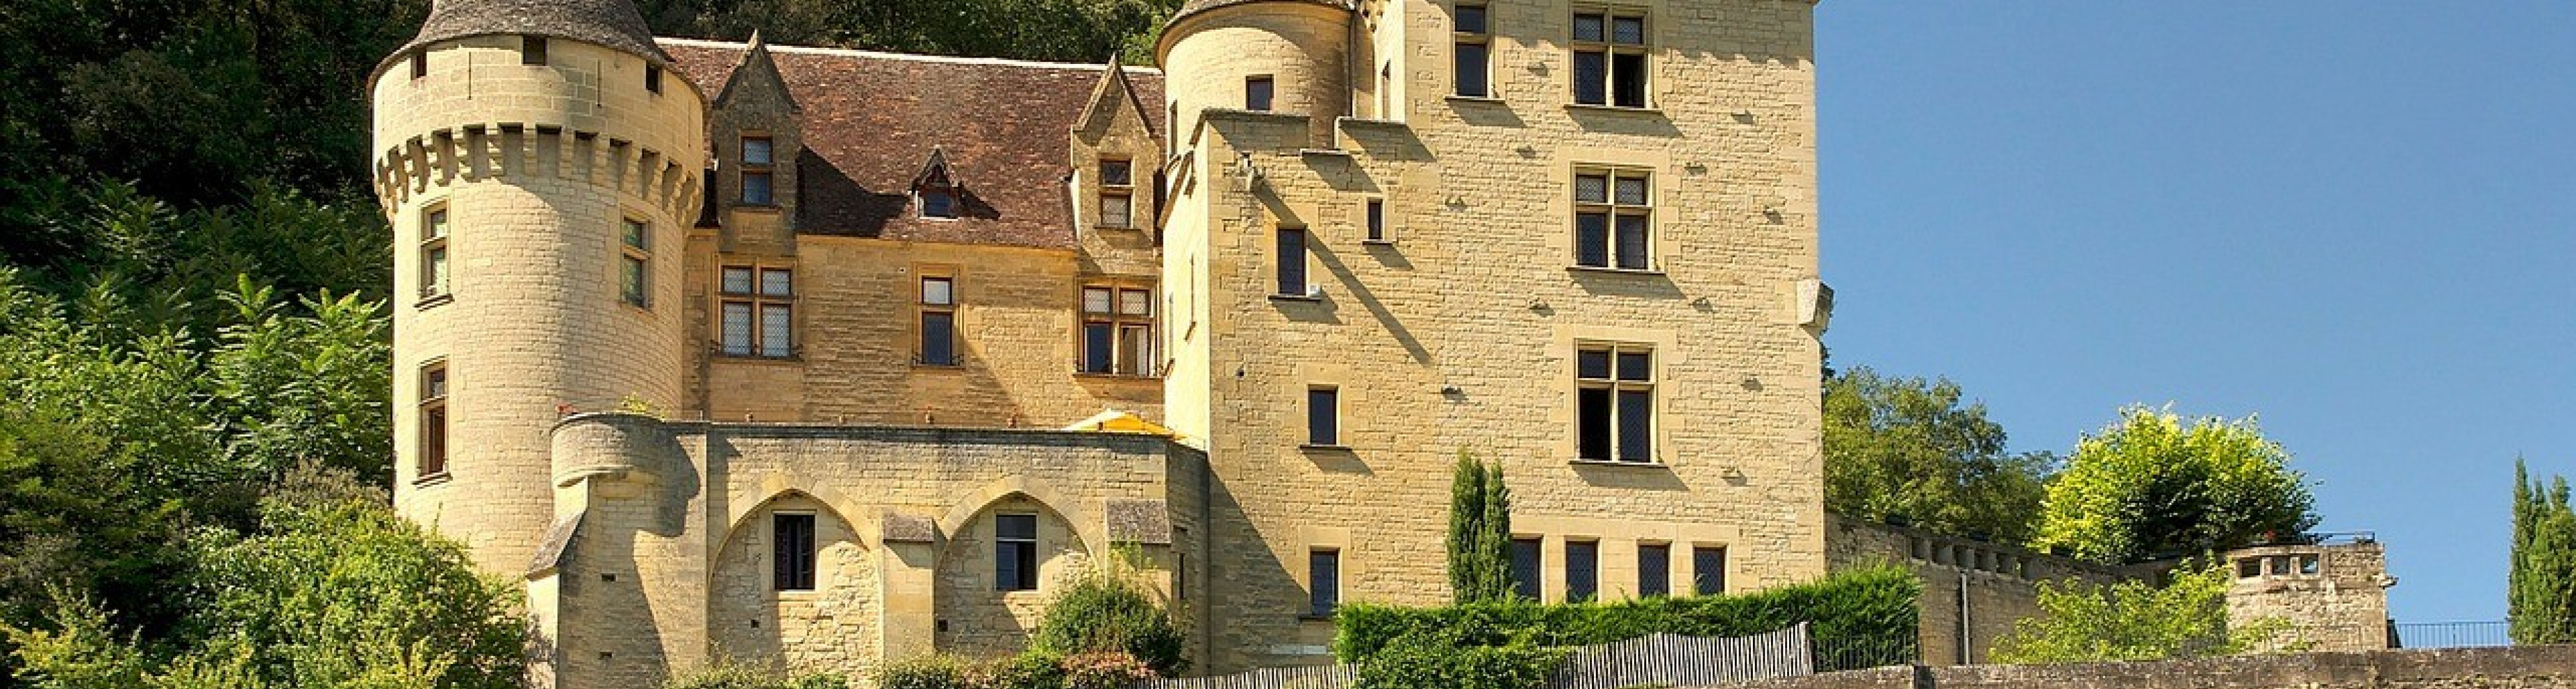 Ontdek de rijke historie en indrukwekkende kastelen van de Dordogne